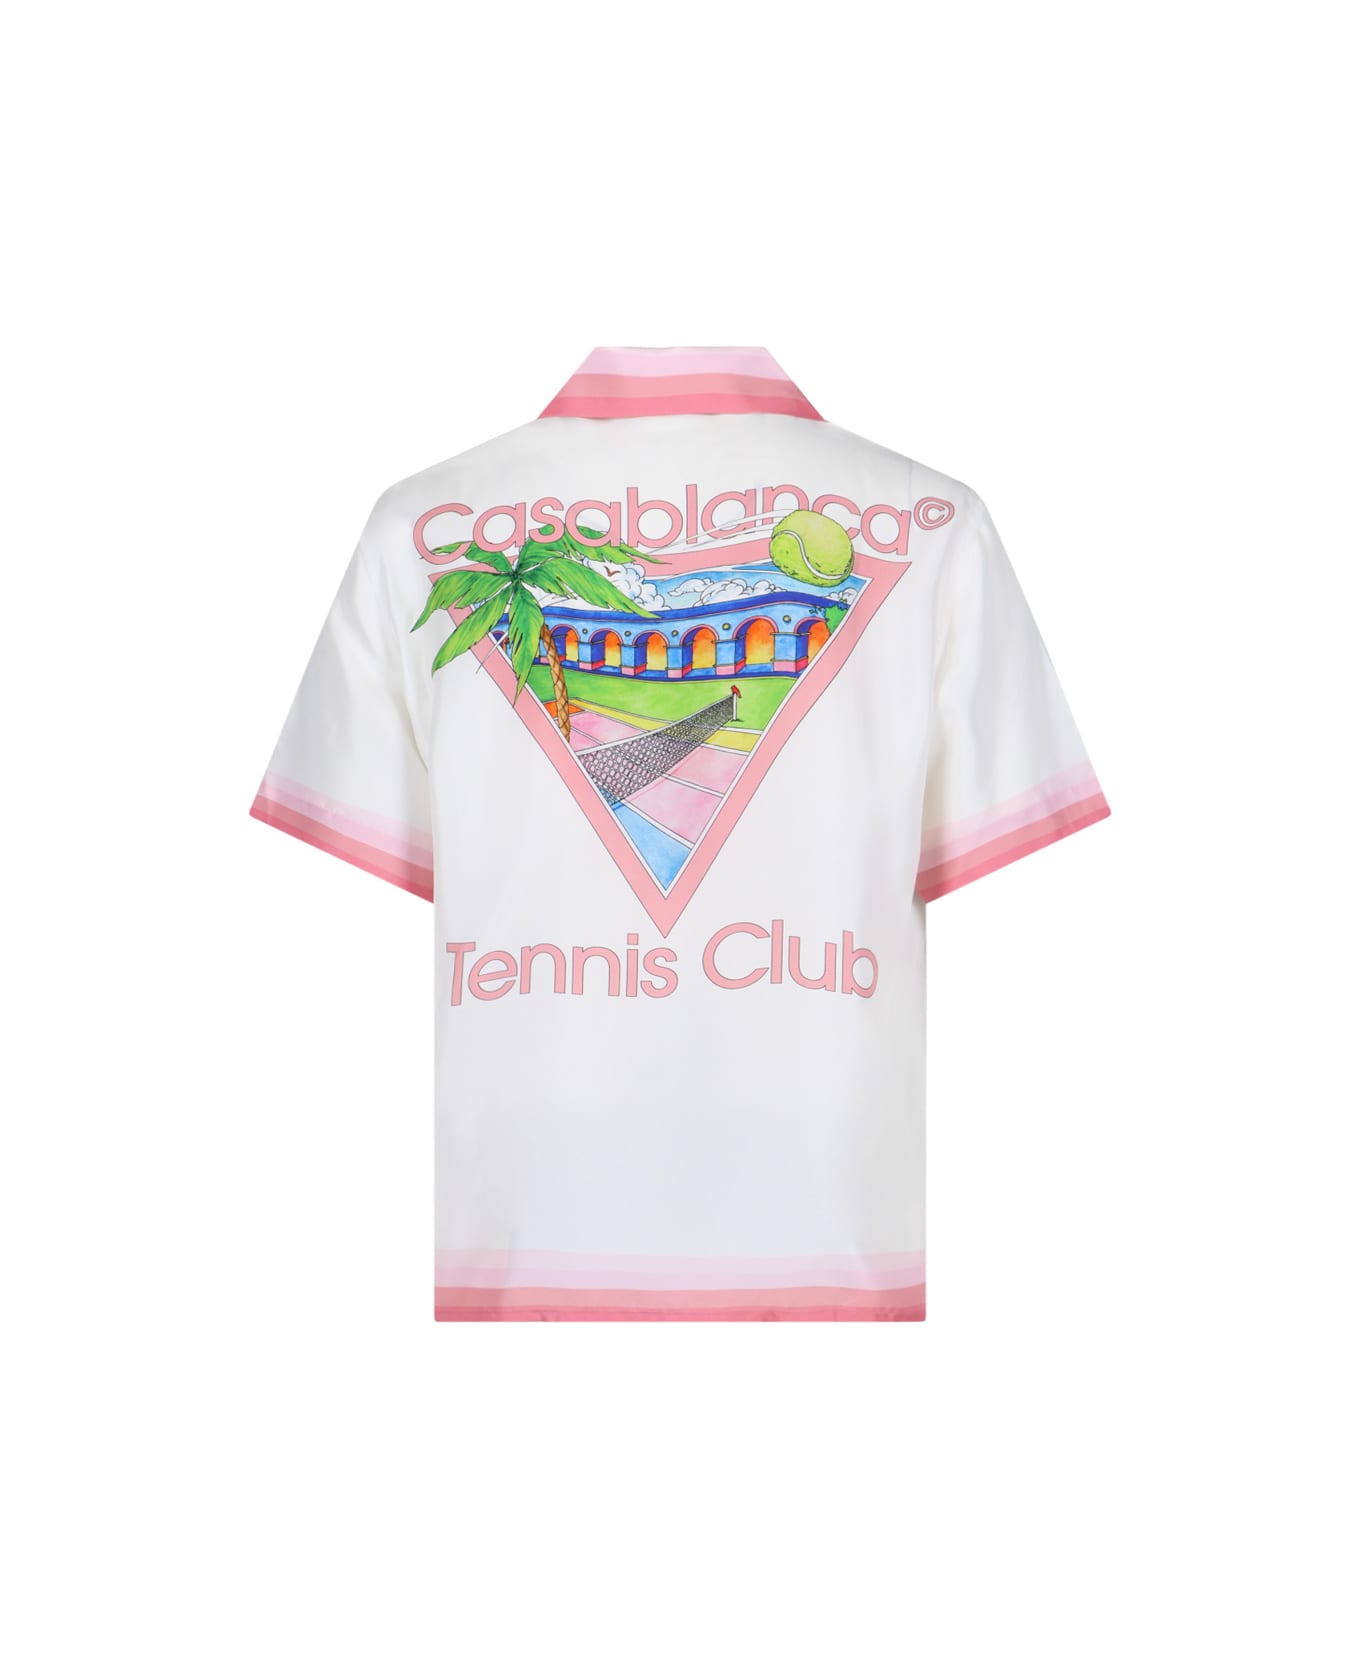 Casablanca 'tennis Club' Shirt - White